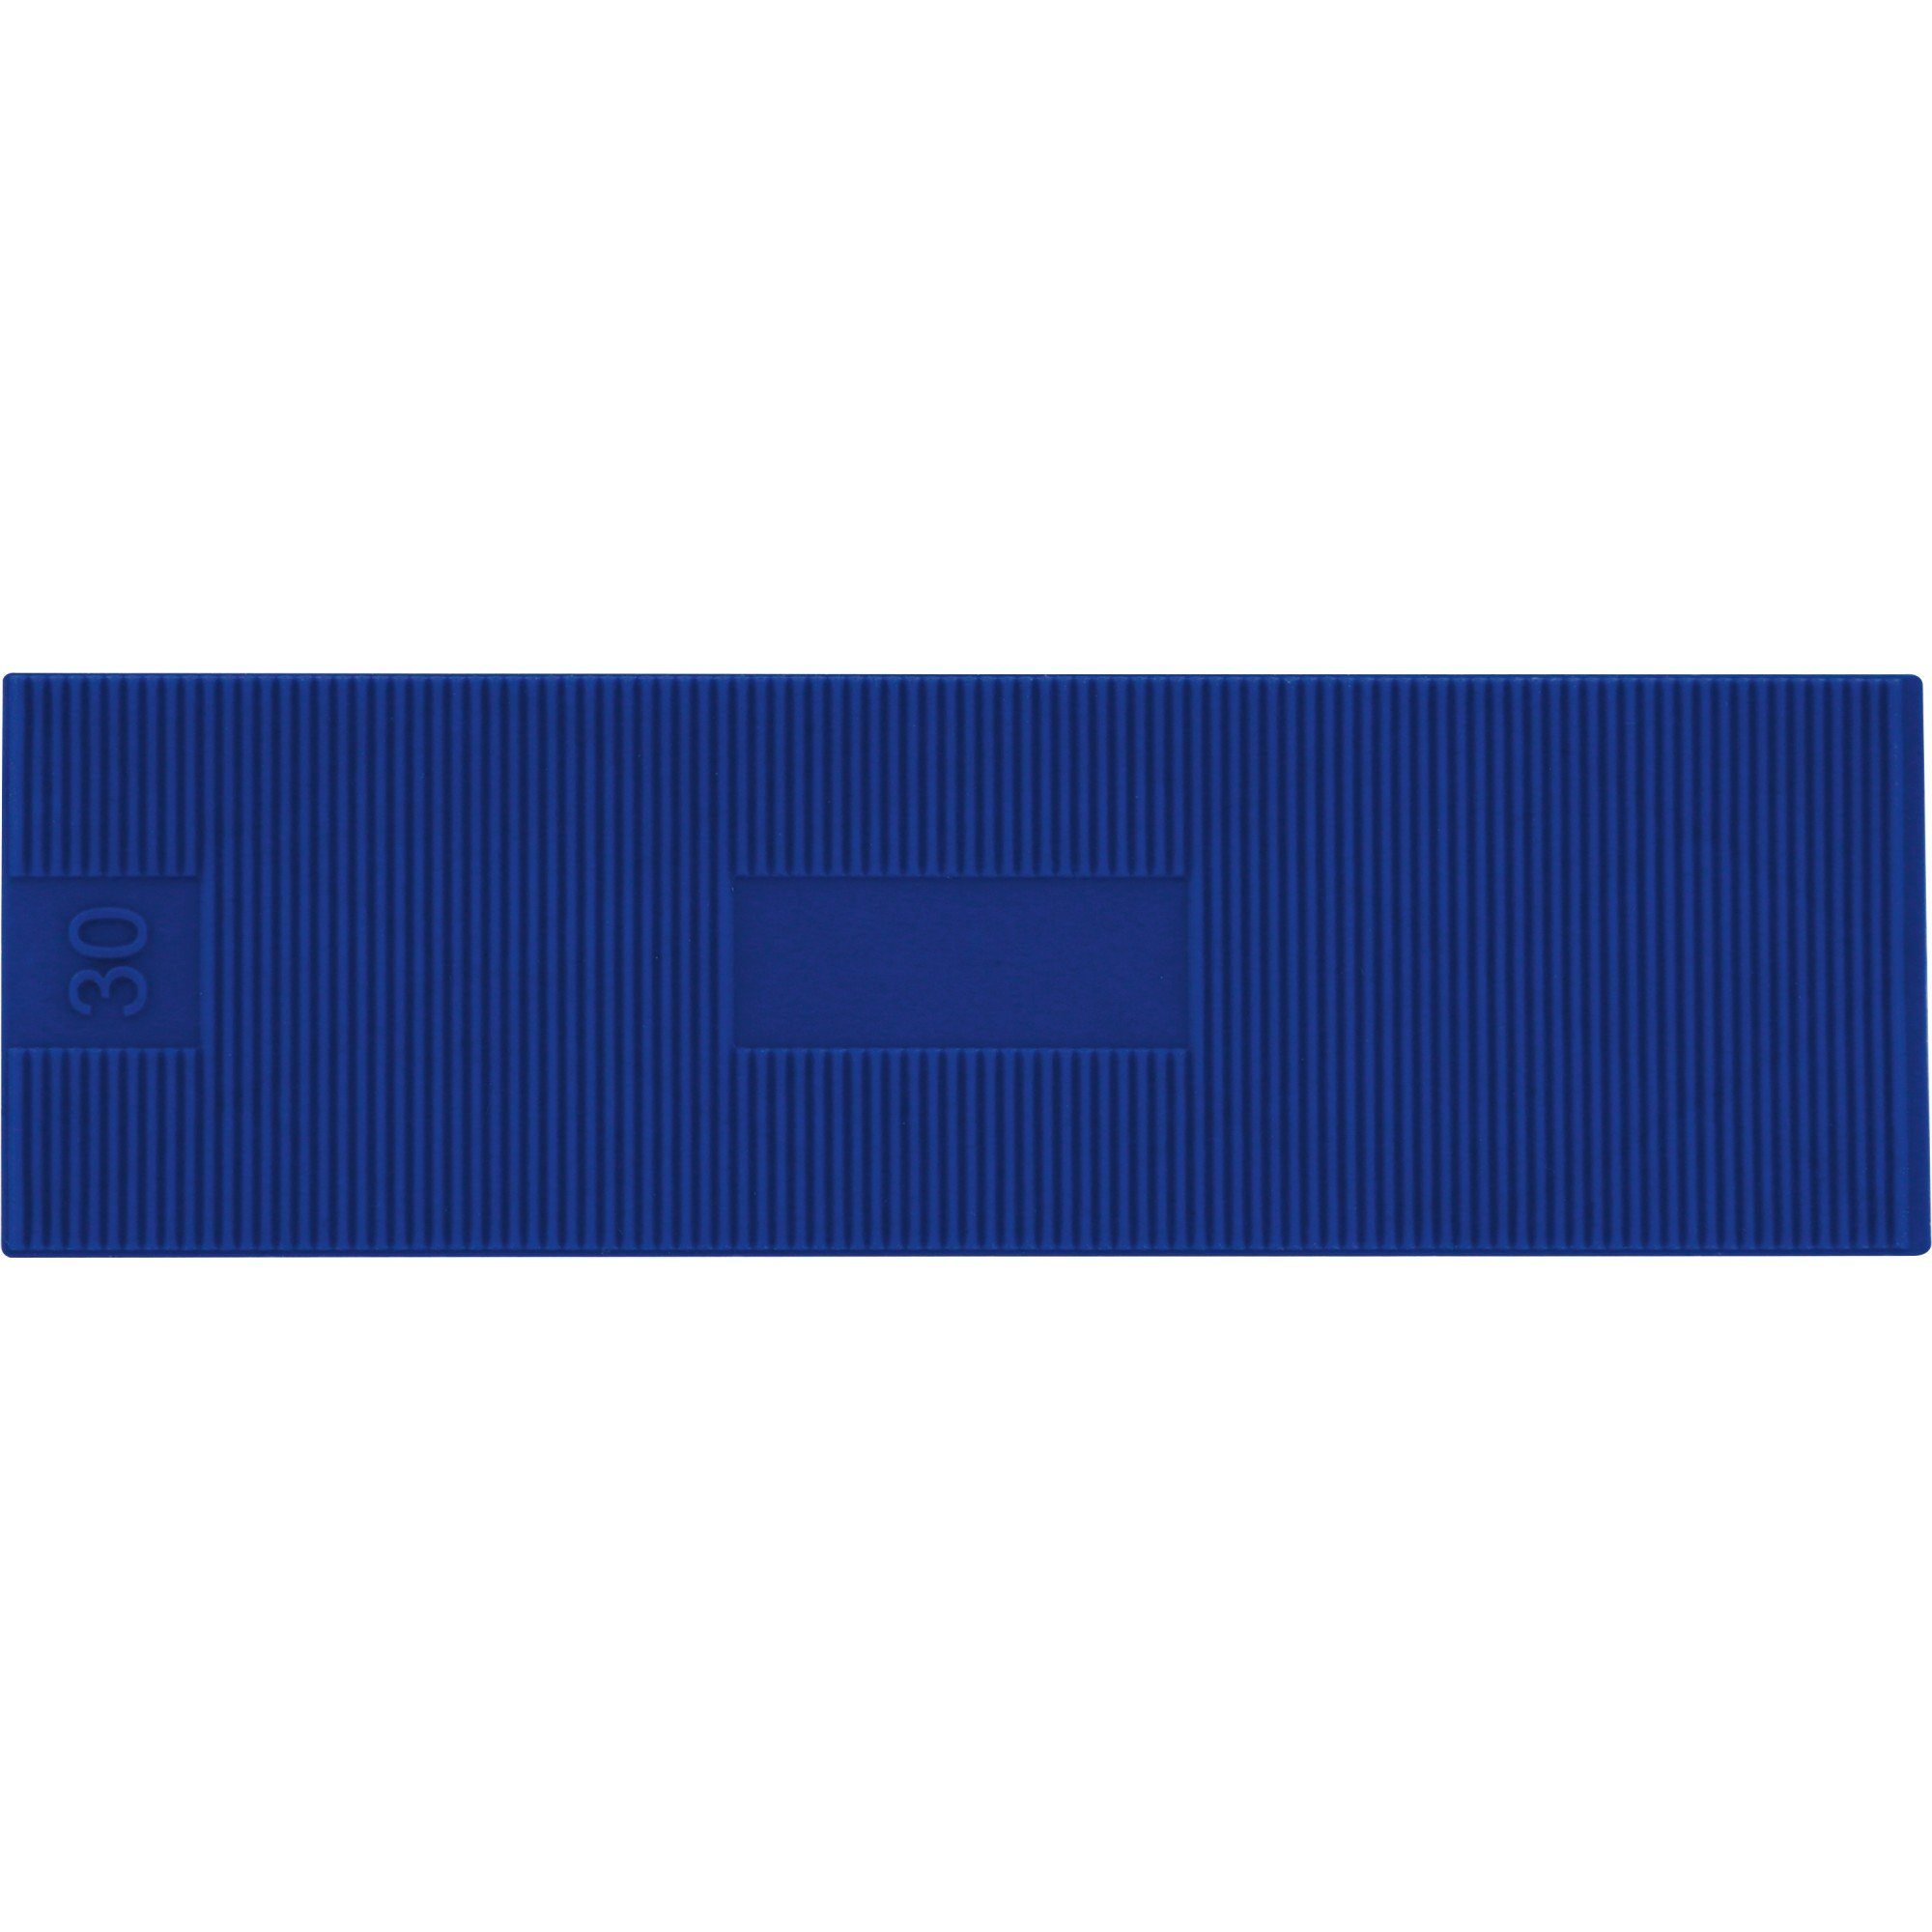 Triuso Verlegekeil PP Verglasungsklötze Montagekeile Unterlegplättchen 100 x 30mm blau, (70 Stück), hohe Tragfähigkeit - Druckfestigkeit 80 n/mm² | Keile